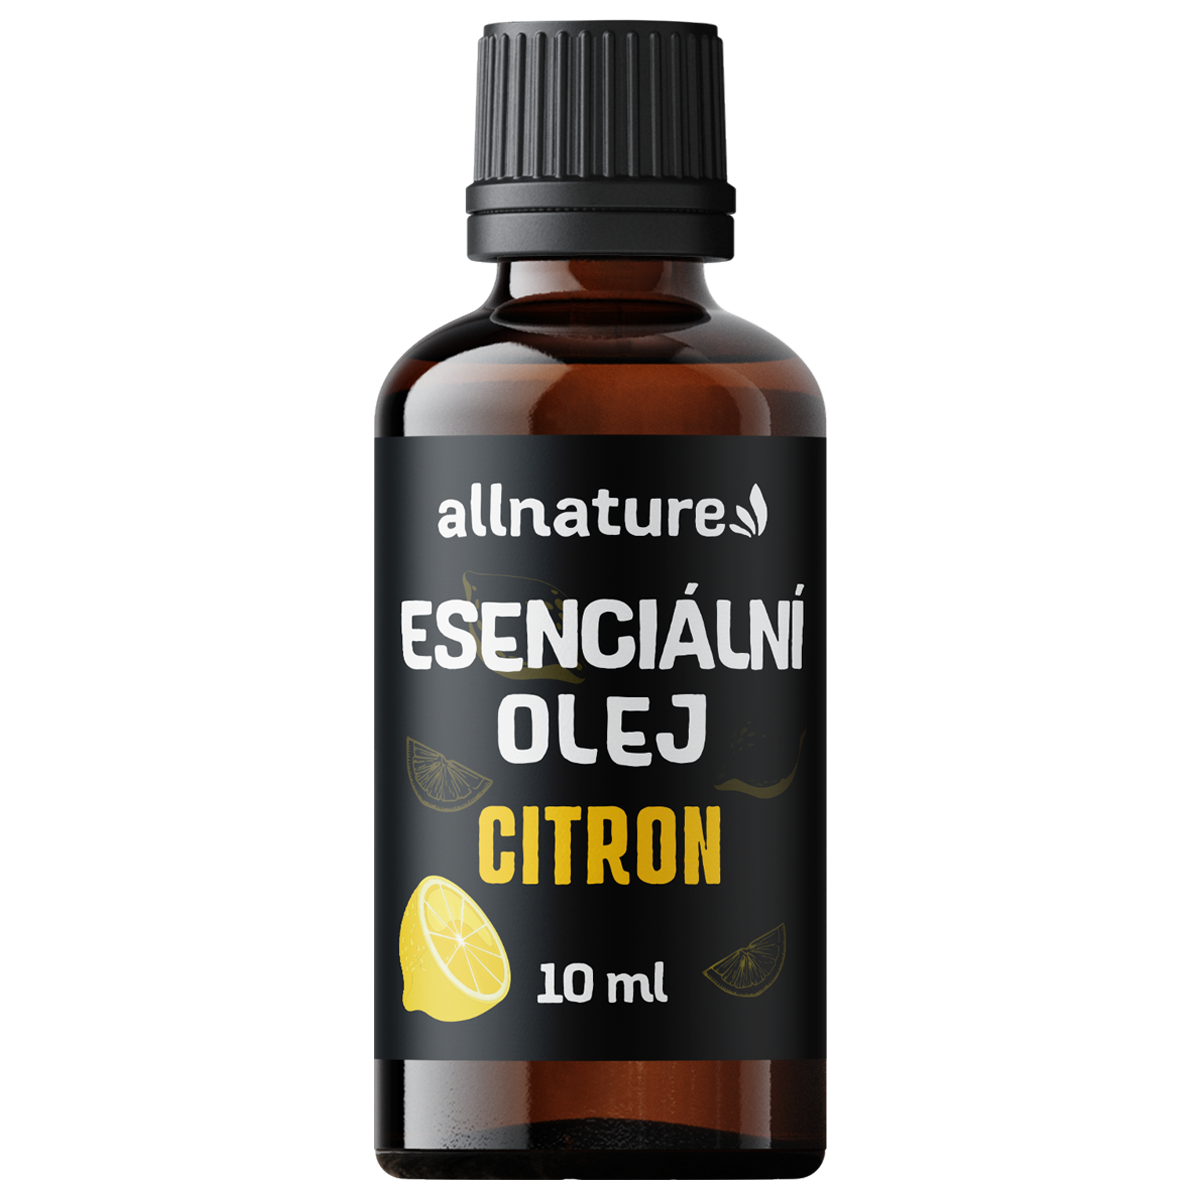 Allnature Esenciální olej Citron (10 ml) - podporuje dobrou náladu a koncentraci Allnature